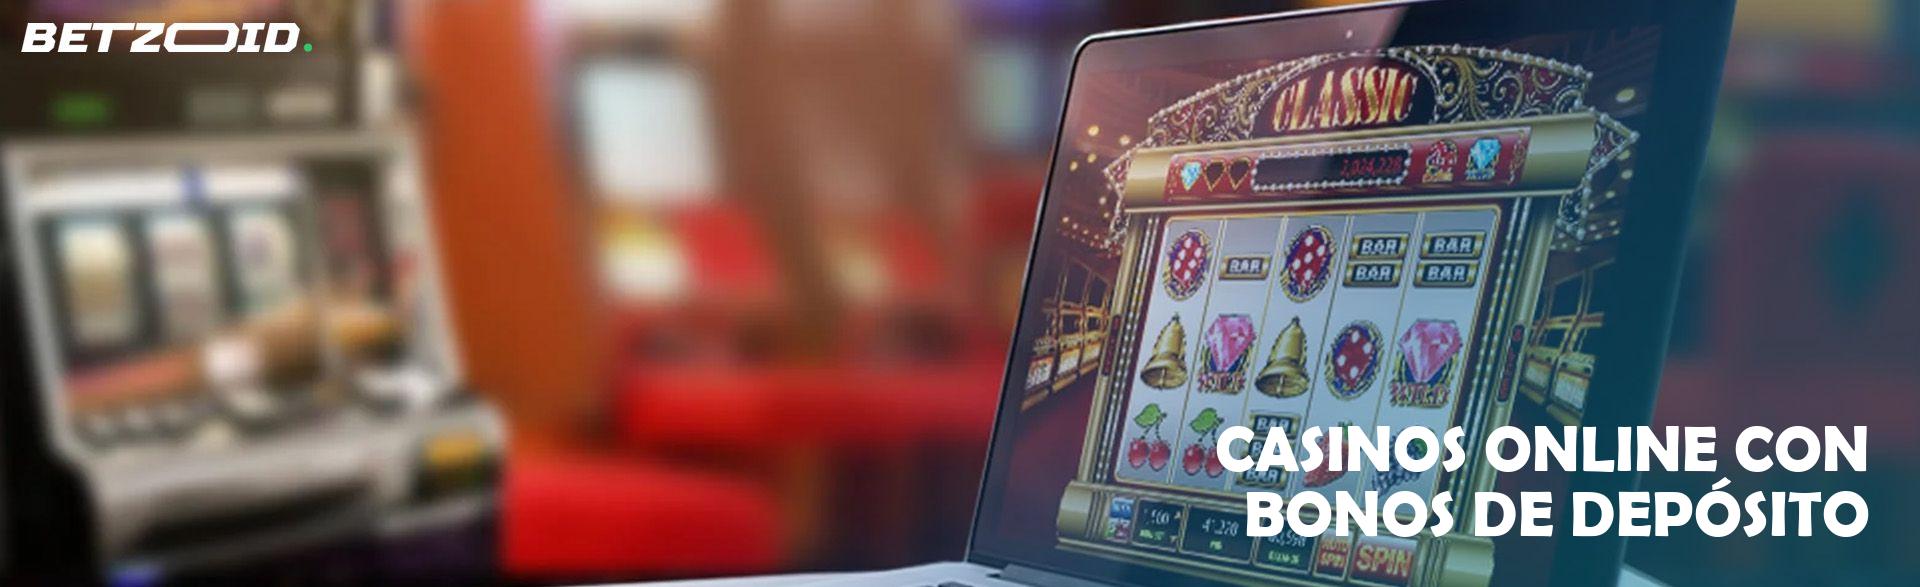 Casinos Online con Bonos de Depósito.